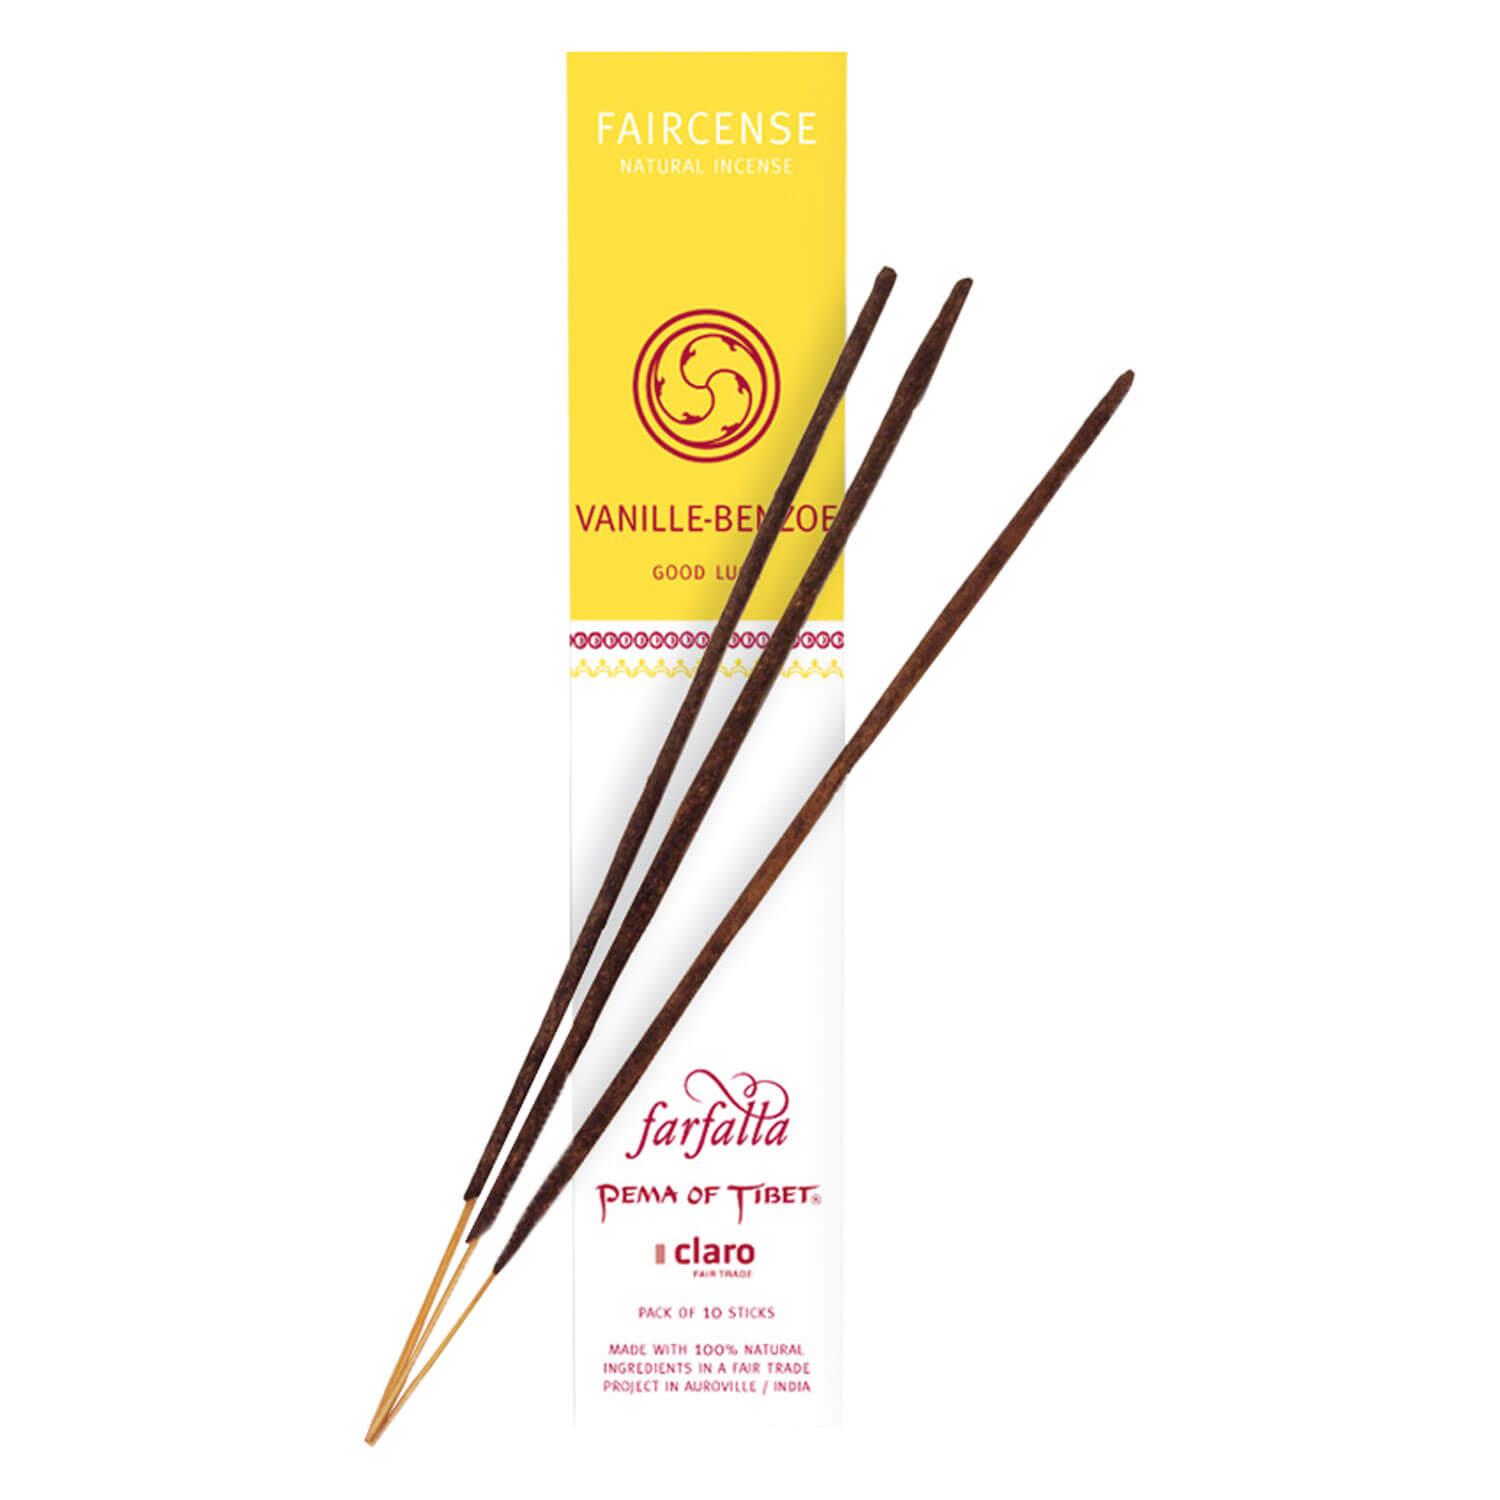 Farfalla Räucherstäbchen - Vanilla/Benzoin - Good Luck Faircense Incense Sticks